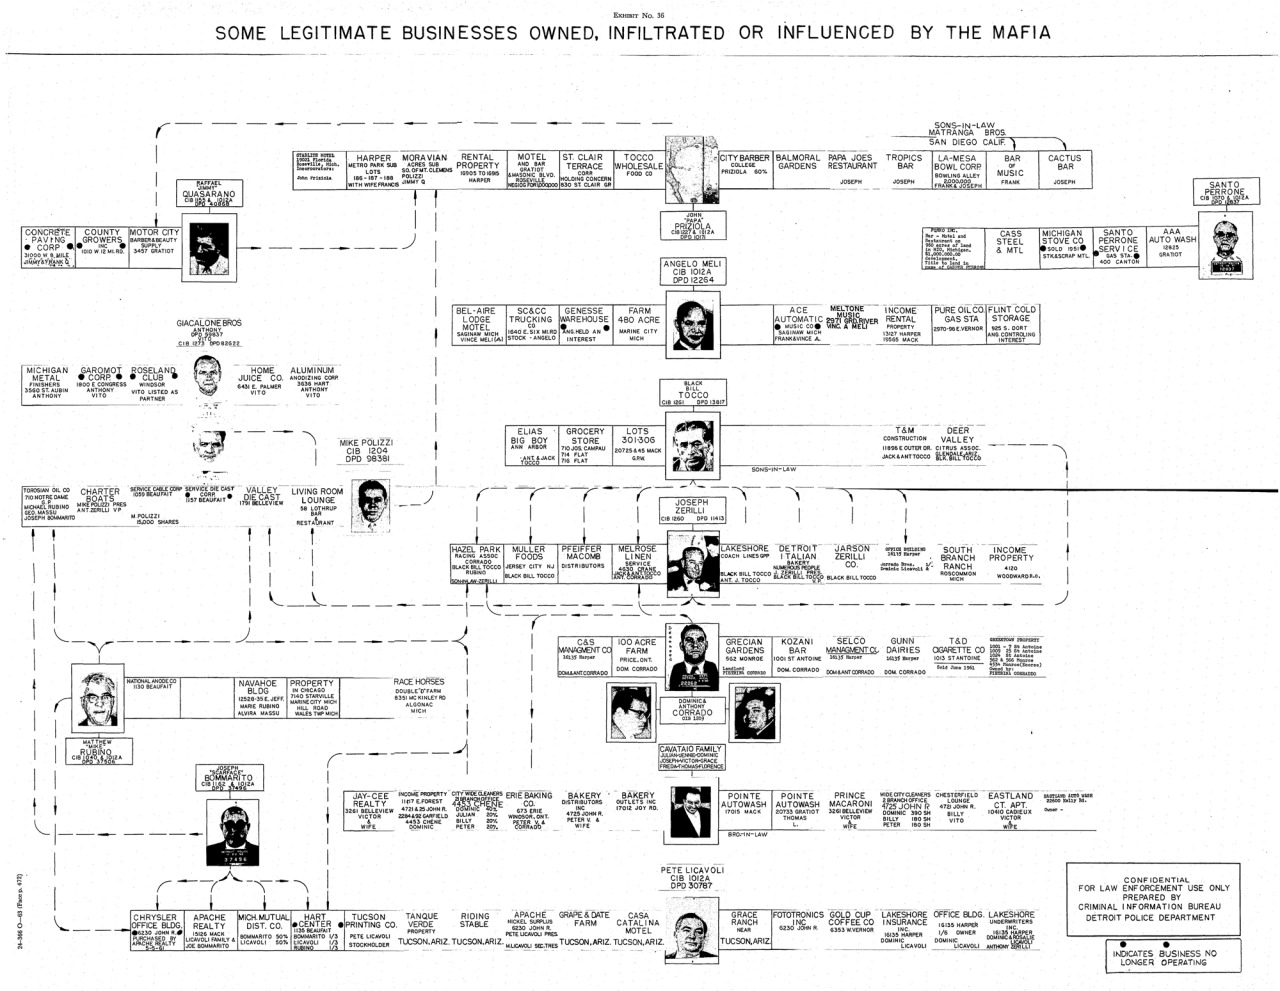 Detroit Mafia Family Chart